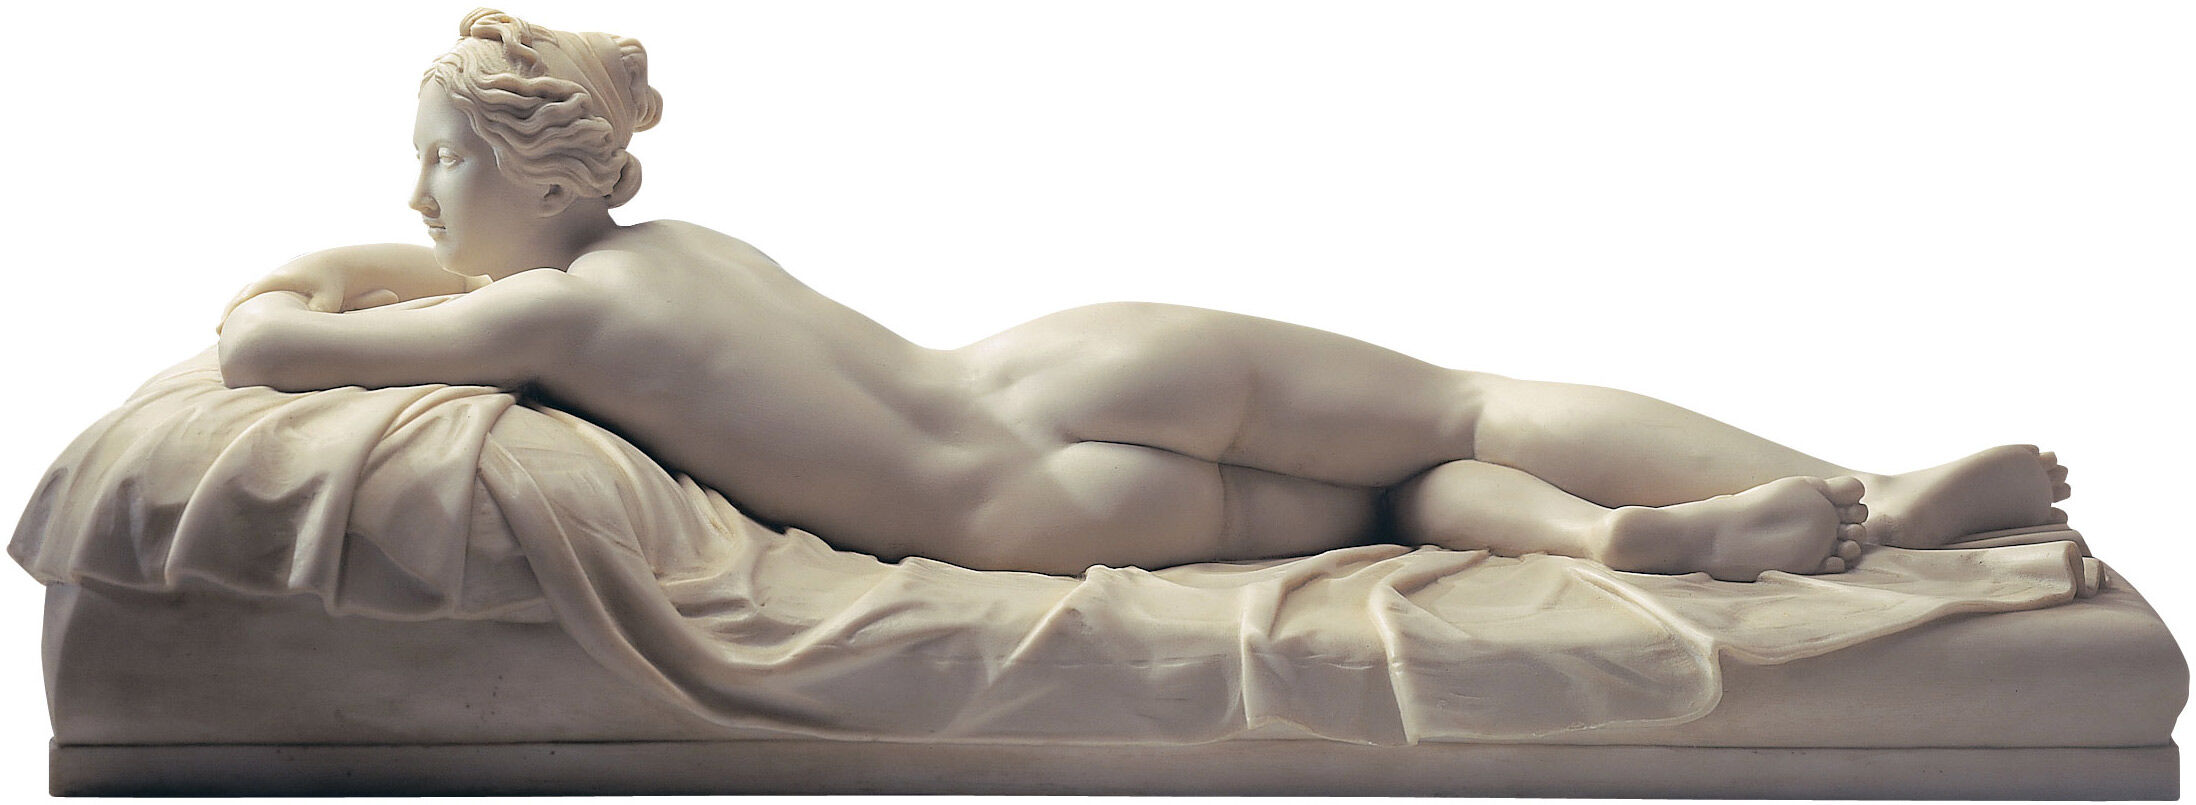 Sculpture "La jeune fille au repos" (1826), marbre artificiel von Johann Gottfried Schadow